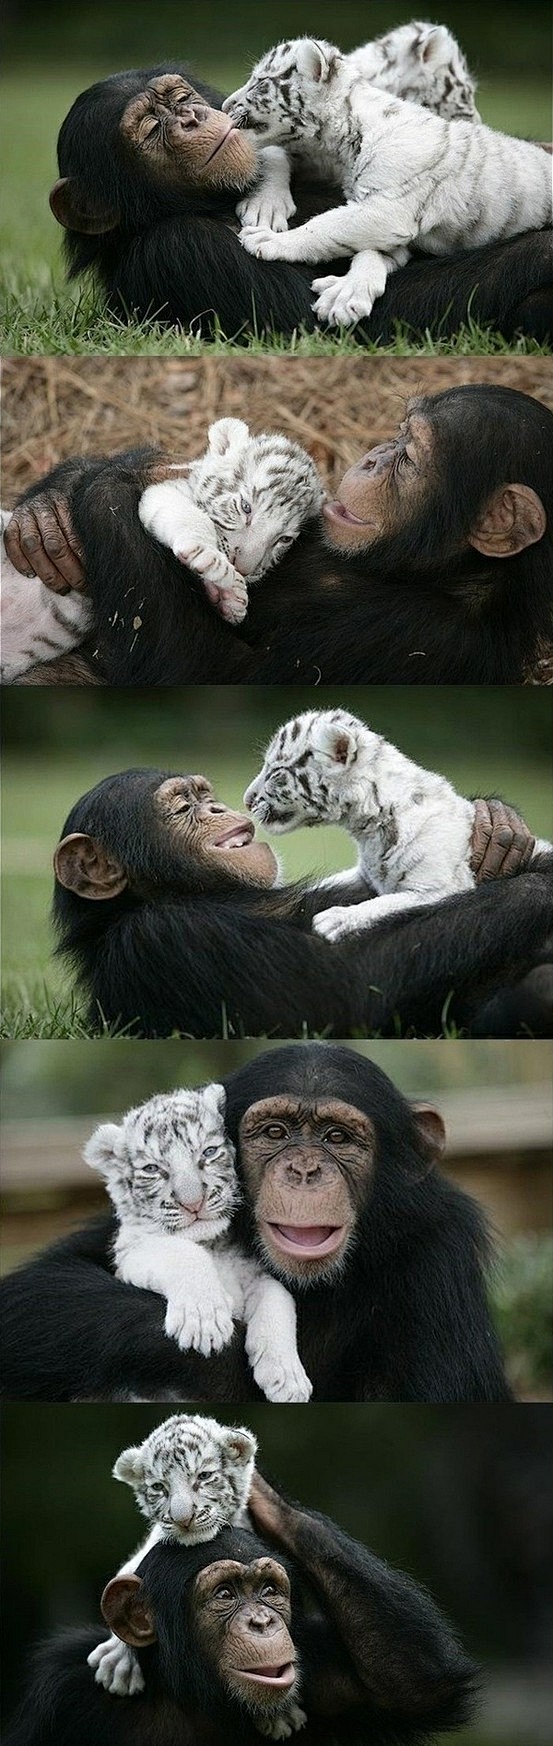 猩猩妈妈与老虎孩子